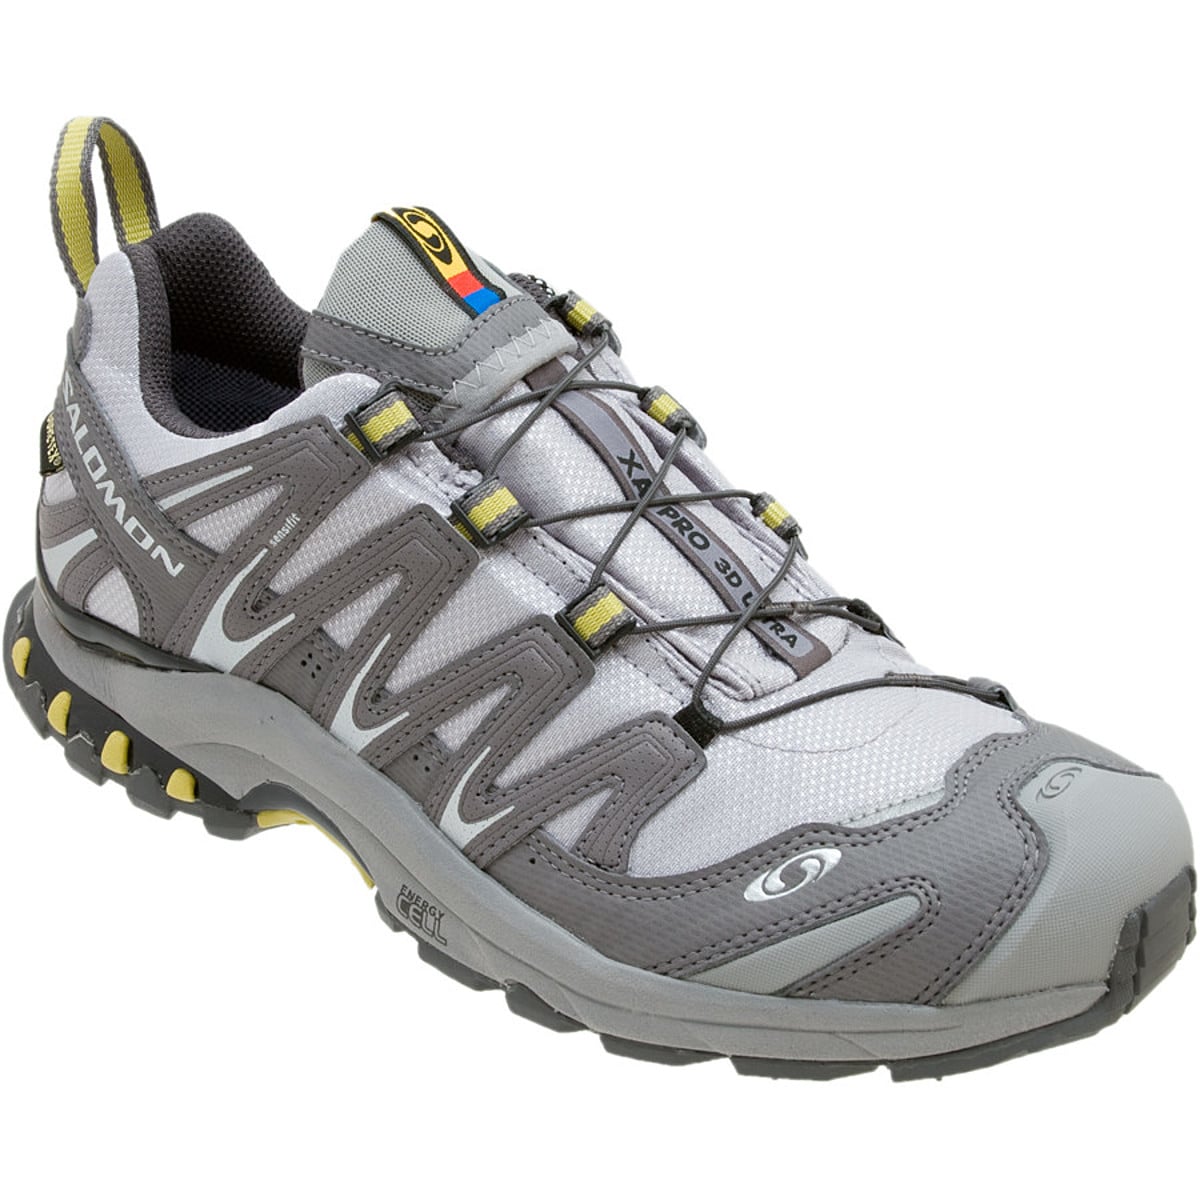 XA Pro 3D Ultra GTX Trail Running Shoe - Women's - Footwear